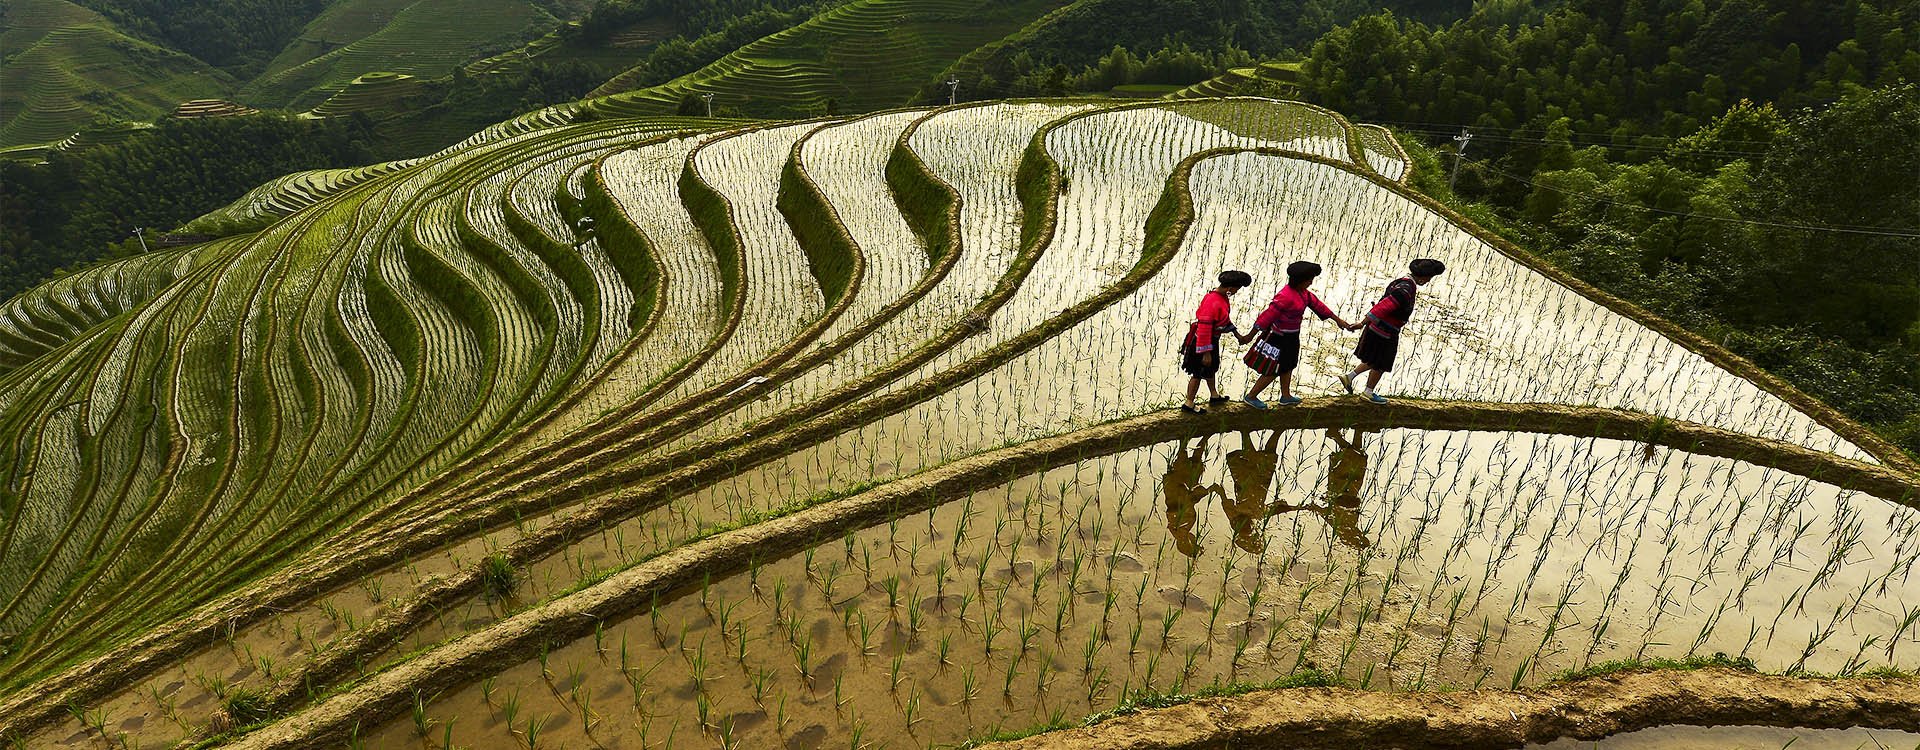 China, rice terrace in Yangshuo Guilin,